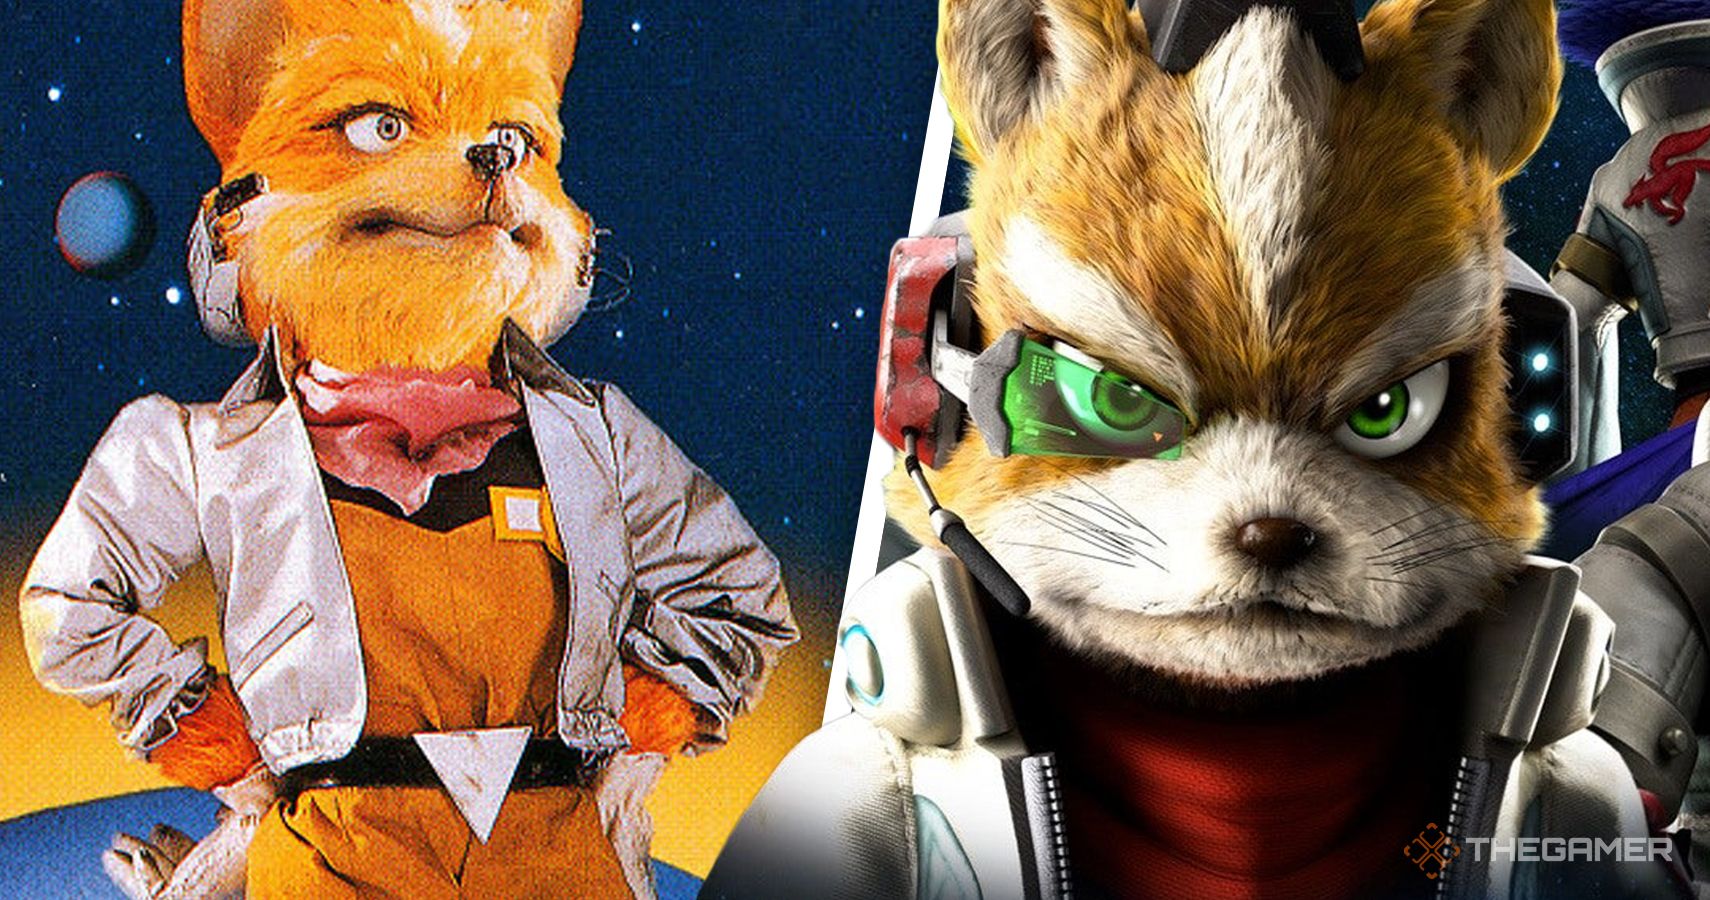 Original Star Fox Developer Reveals How to Bring Back the Series